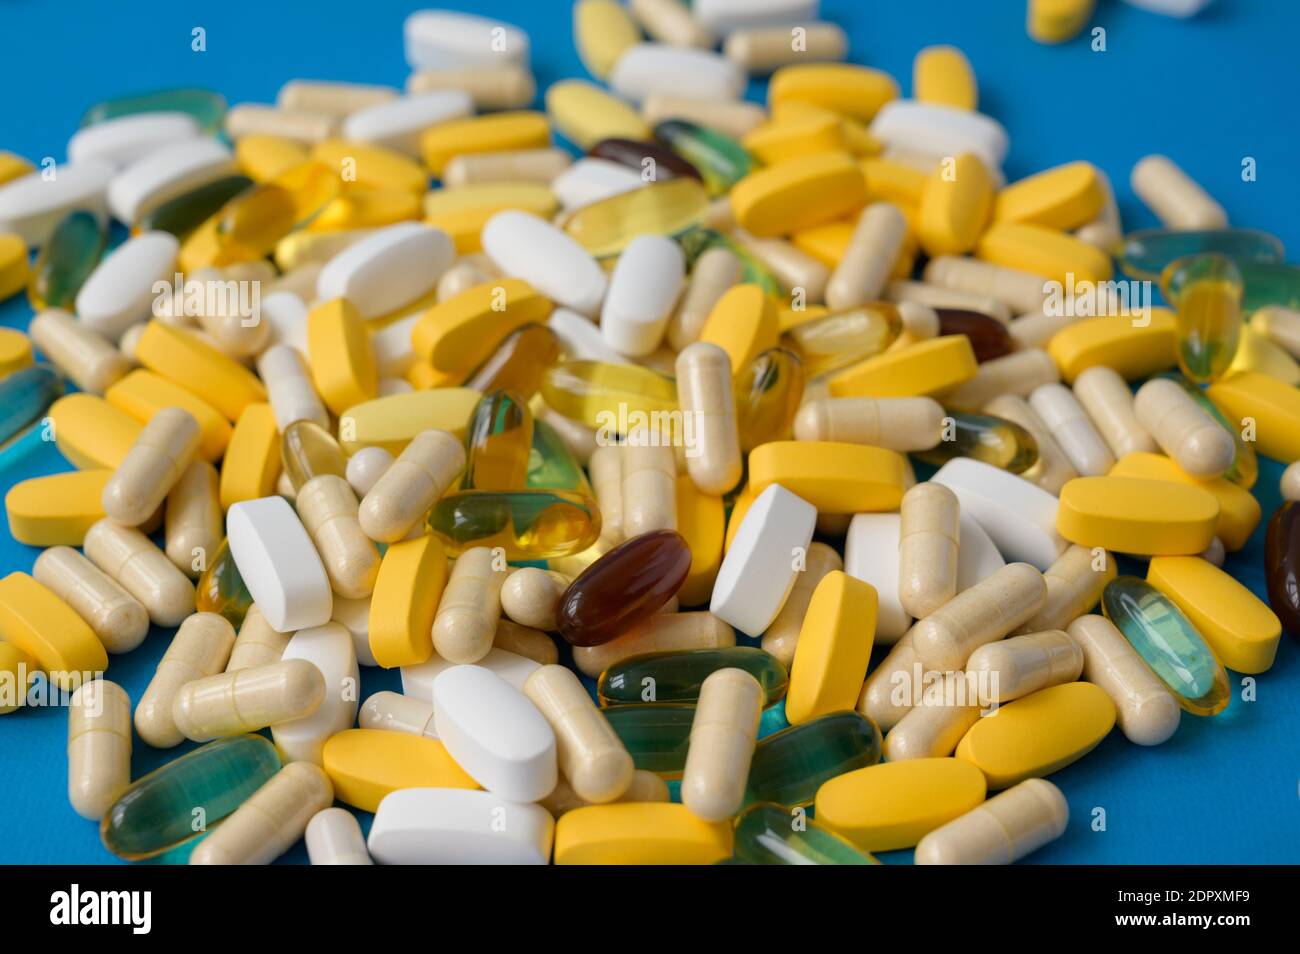 Arzneimittel Konzept von vielen Pillen Tabletten Softgels und Kapseln auf Blaue Oberfläche Stockfoto